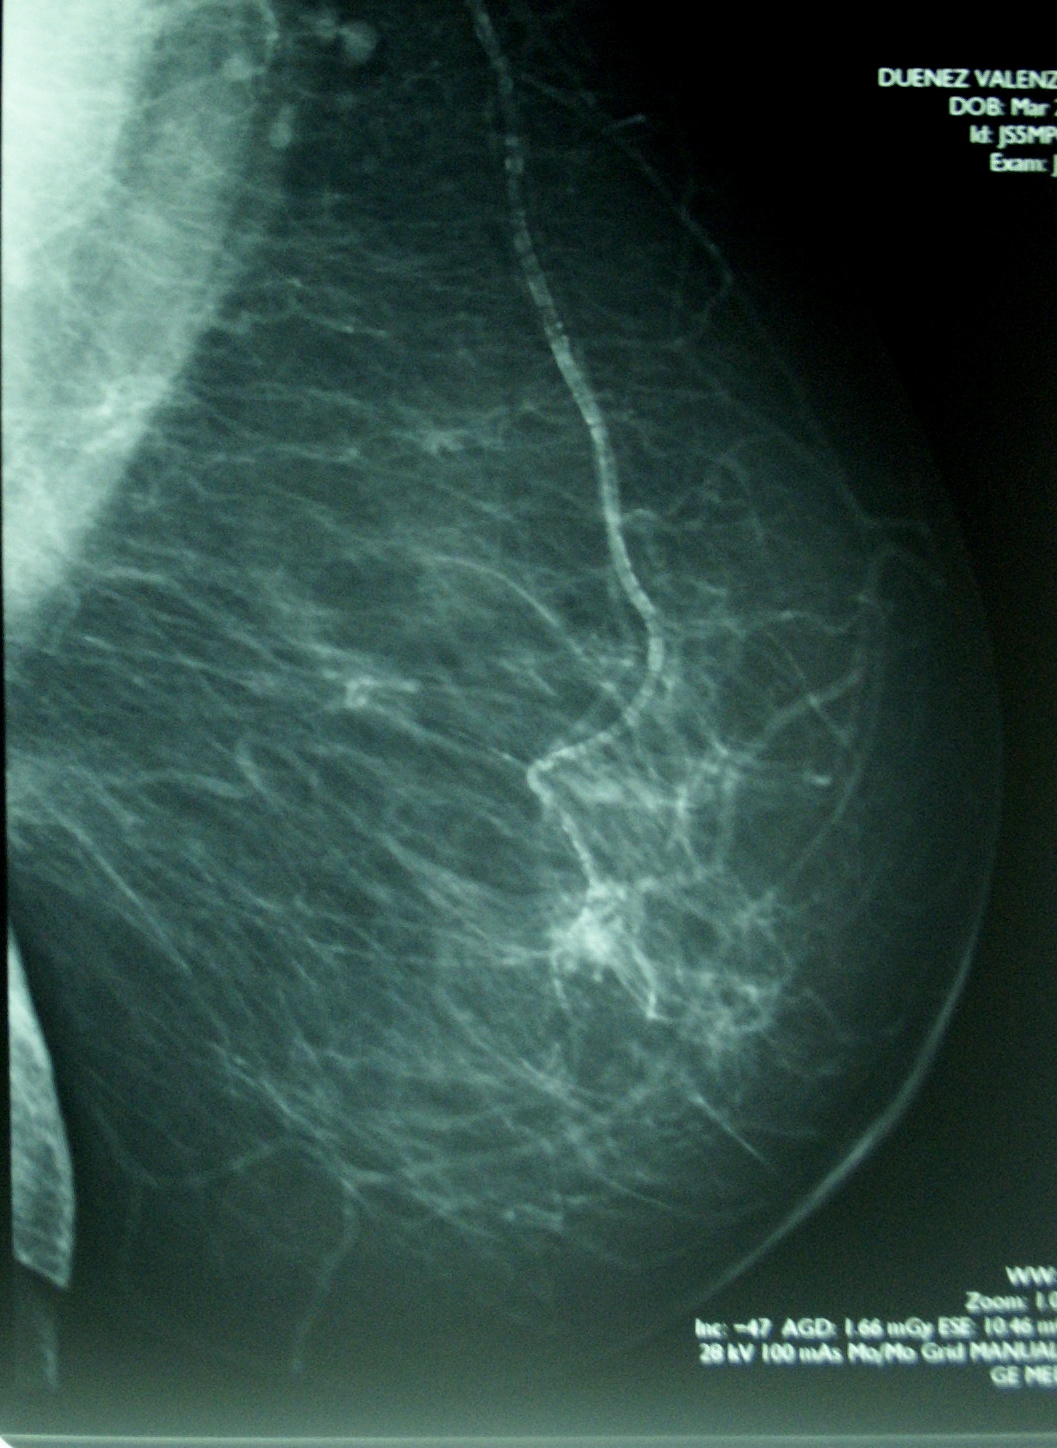 Ukázka mammogramu prsu v ML projekci. Po vakcinaci se u mnoha žen na snímku zmnoží řada různě velkých světlých lokalit, které toto vyšetření nedovoluje odlišit od ložisek šířící se rakoviny. Kredit: volné dílo.